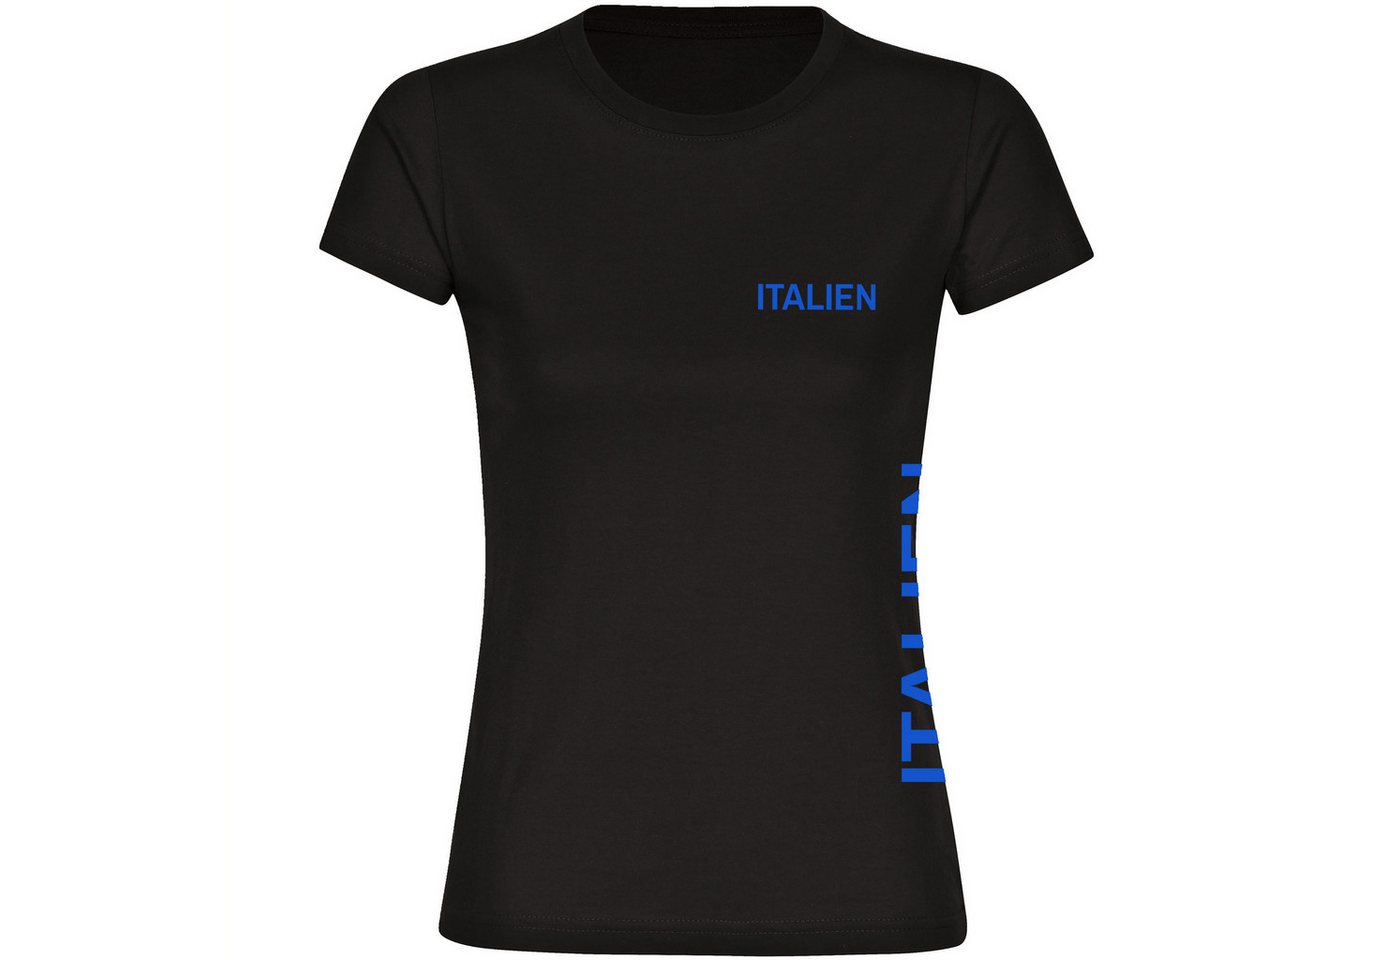 multifanshop T-Shirt Damen Italien - Brust & Seite - Frauen von multifanshop